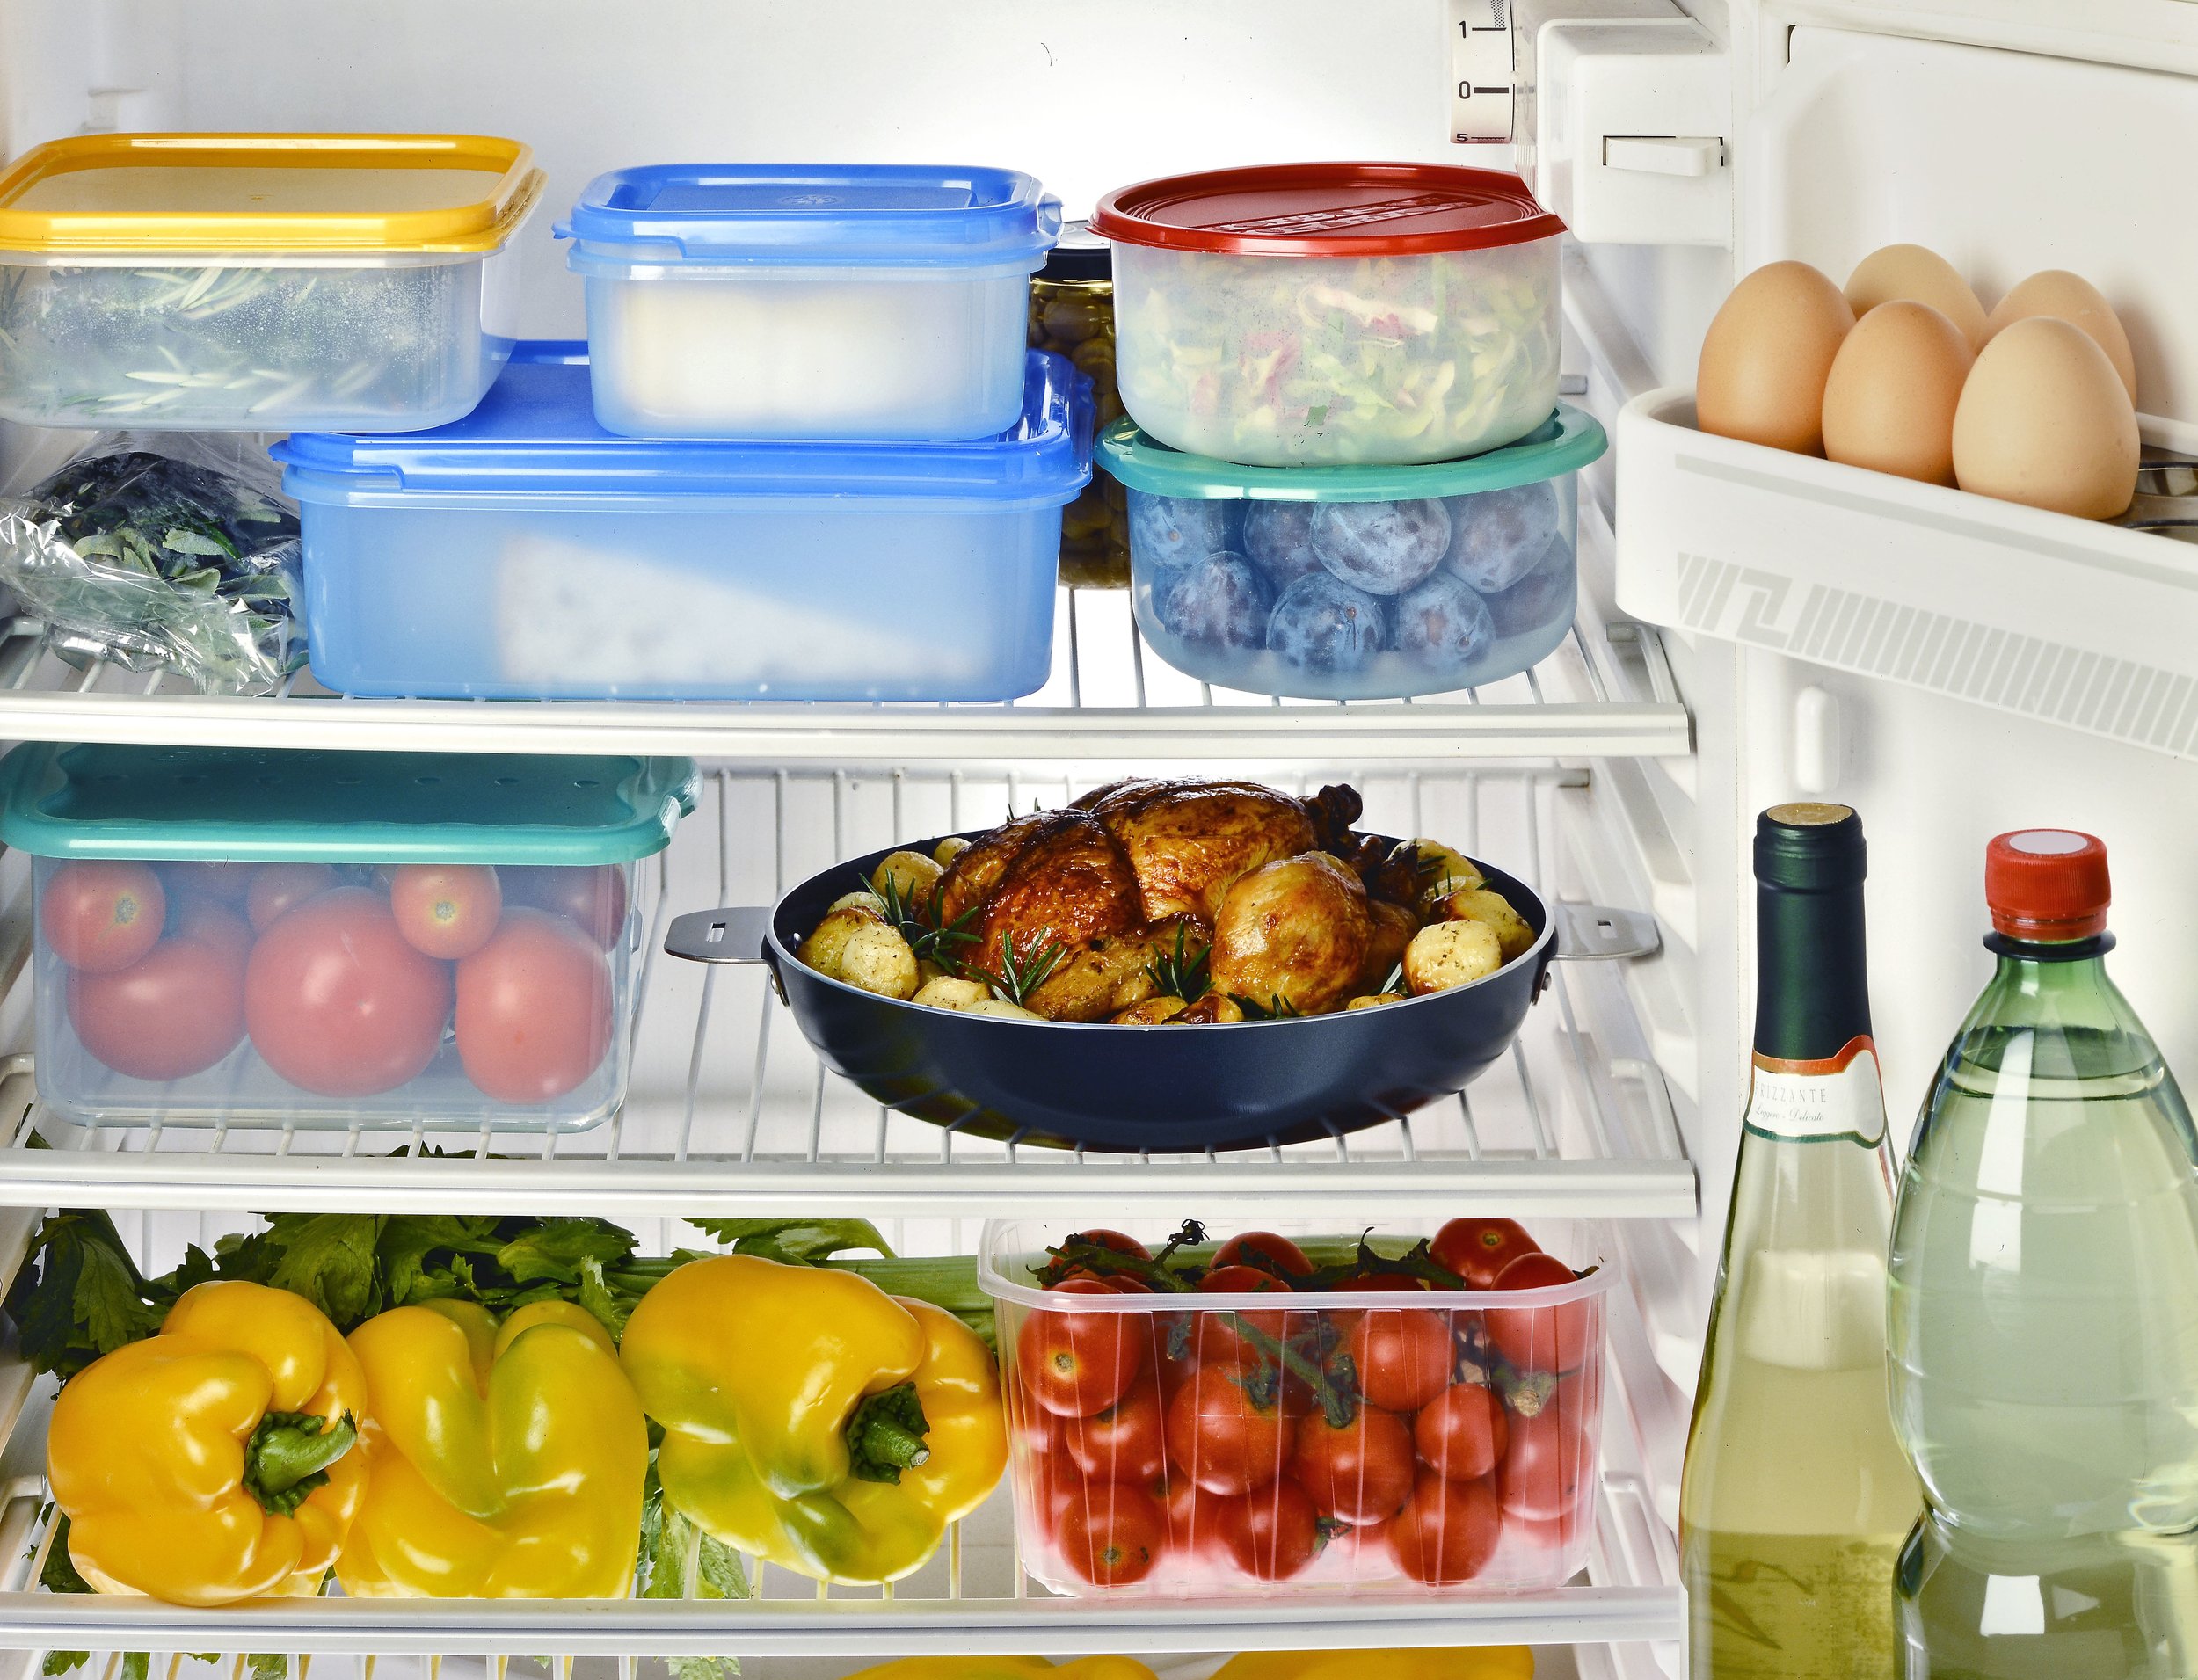 Хранение готовой пищи. Проддуктыв холодильнике. Холодильник с продуктами. Хранение продуктов. Холодильник с едой.